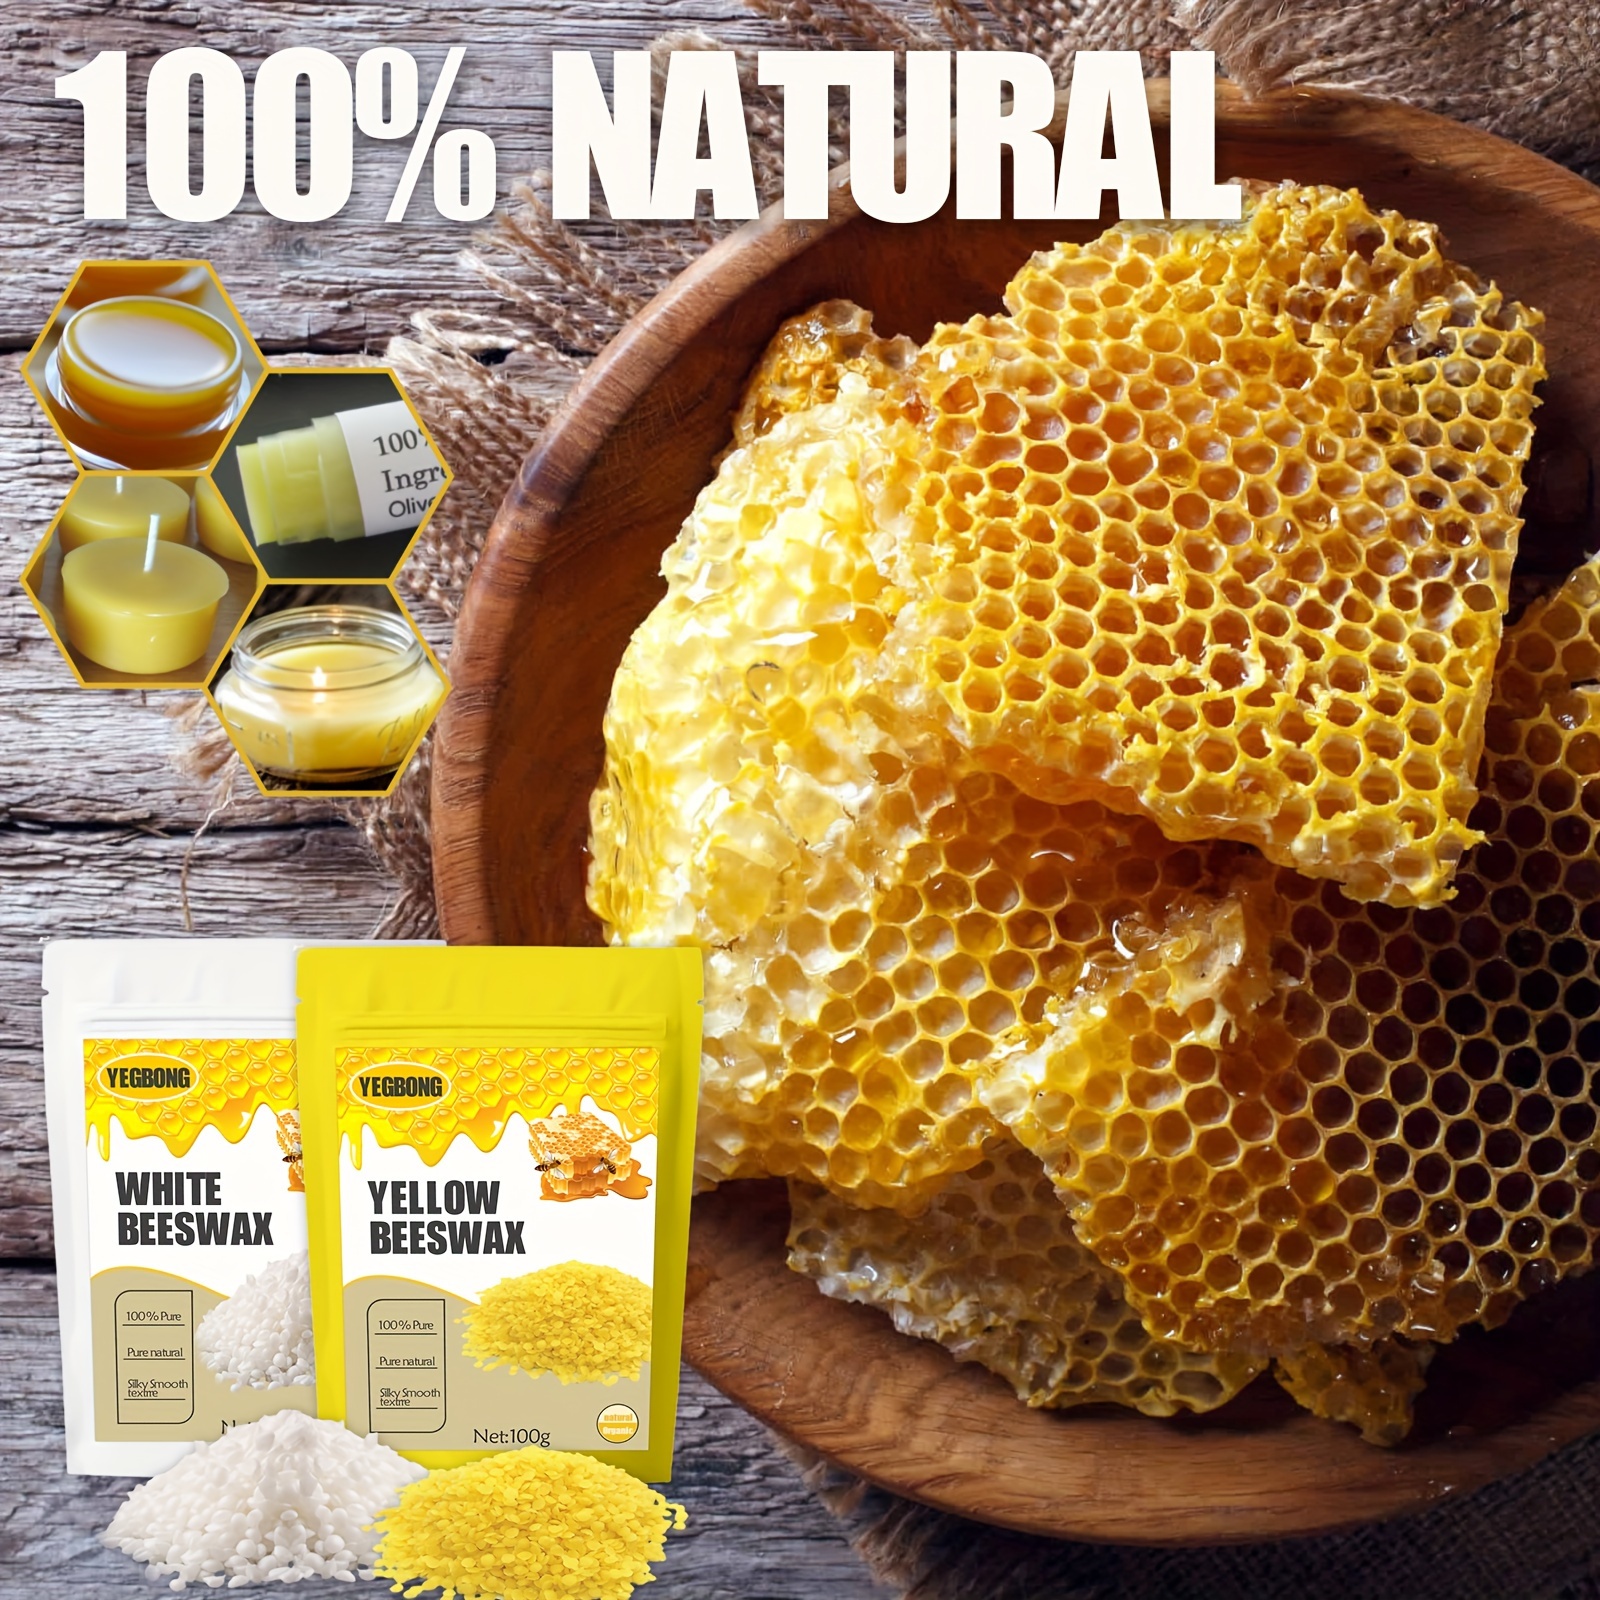 Natural Honey Wax Granules, Beeswax Flakes, Wax Flakes